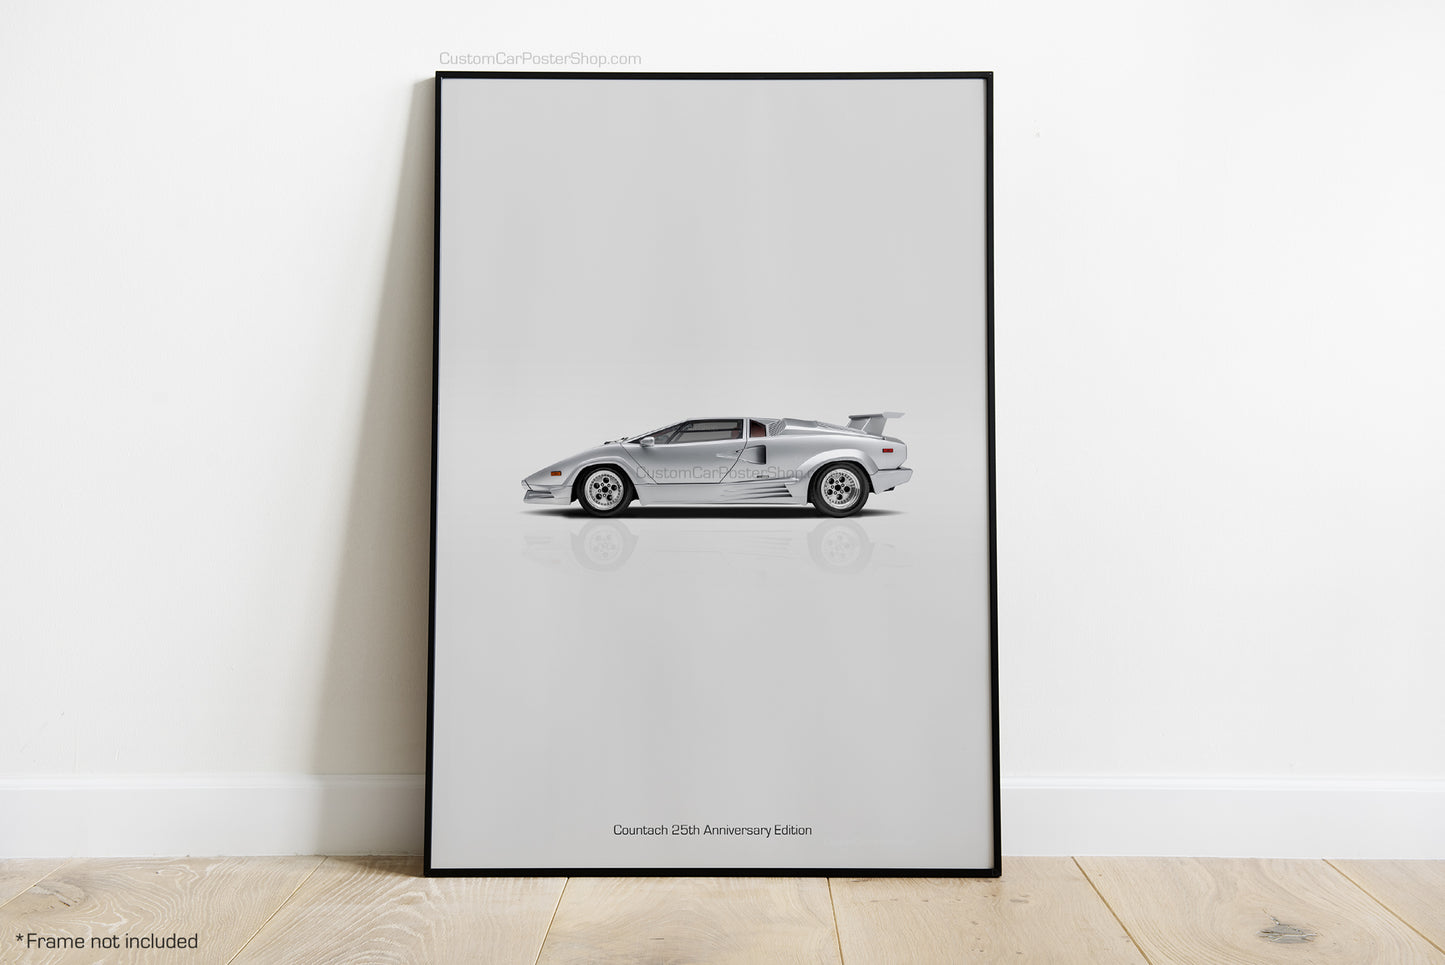 Lamborghini Countach 25th Anniversary Edition Poster - Minimalistic Wall Art